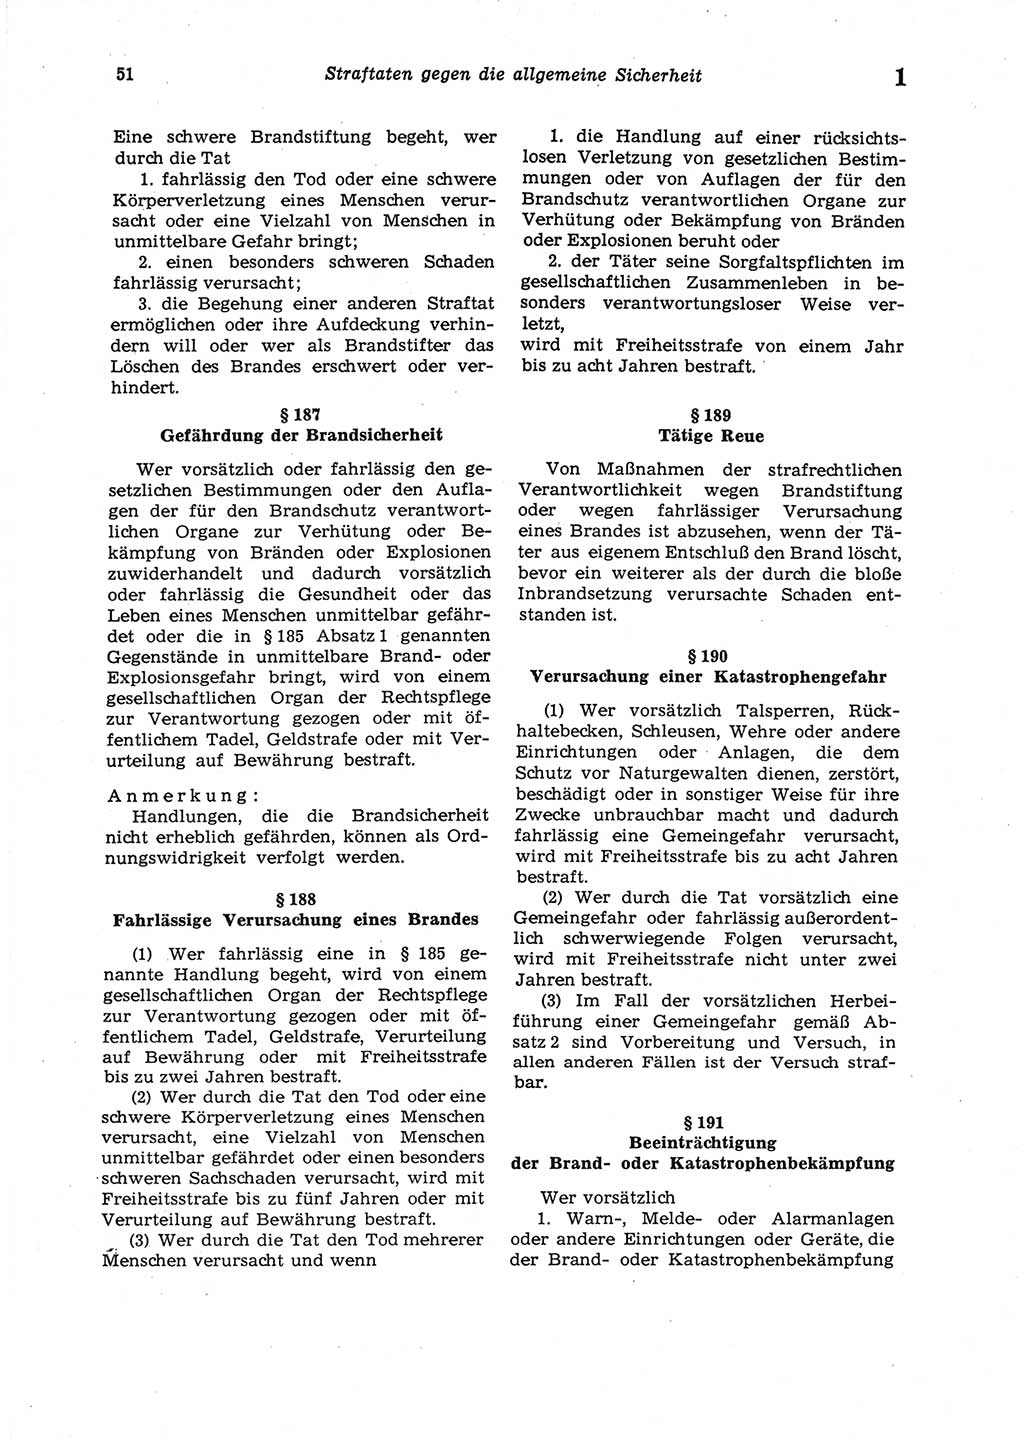 Strafgesetzbuch (StGB) der Deutschen Demokratischen Republik (DDR) 1987, Seite 51 (StGB DDR 1987, S. 51)